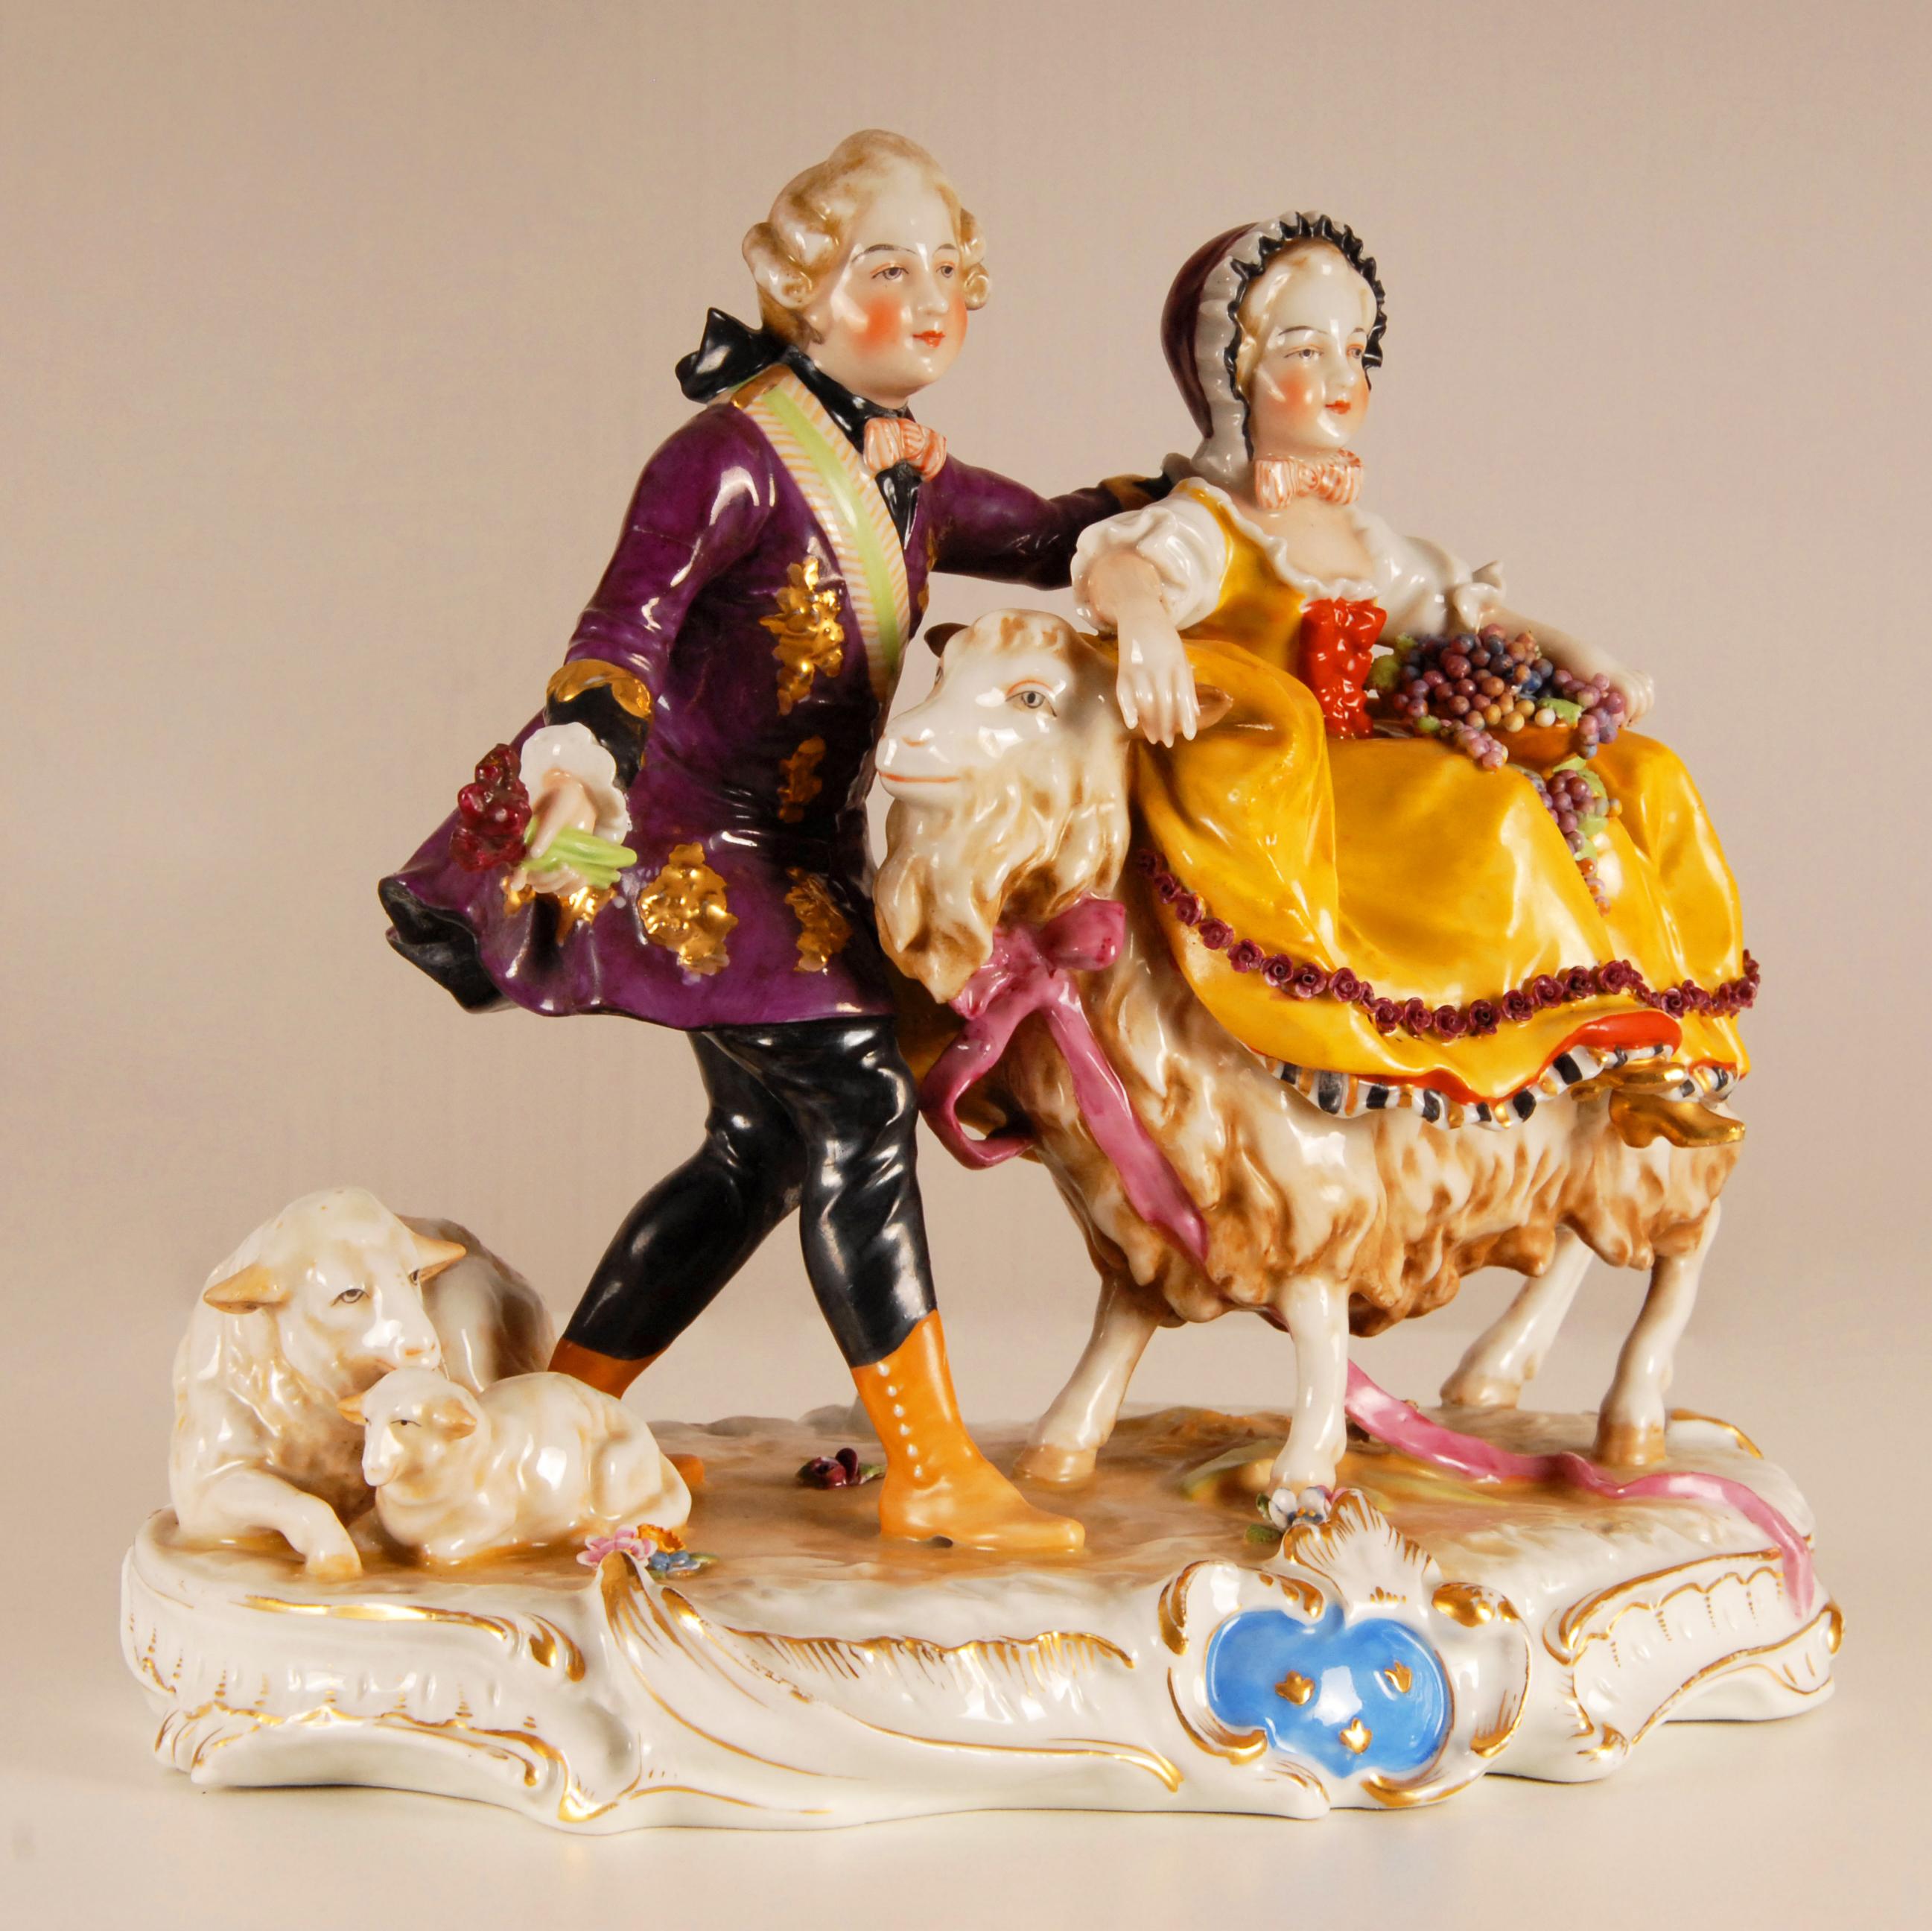 Très rare figurine ancienne du 19ème siècle Vieux Paris
Représentant un couple avec des moutons et une chèvre
Très détaillé avec les roses appliquées sur sa robe
Devant les armoiries bleues des Coates de France
Marqué au dos d'un M couronné